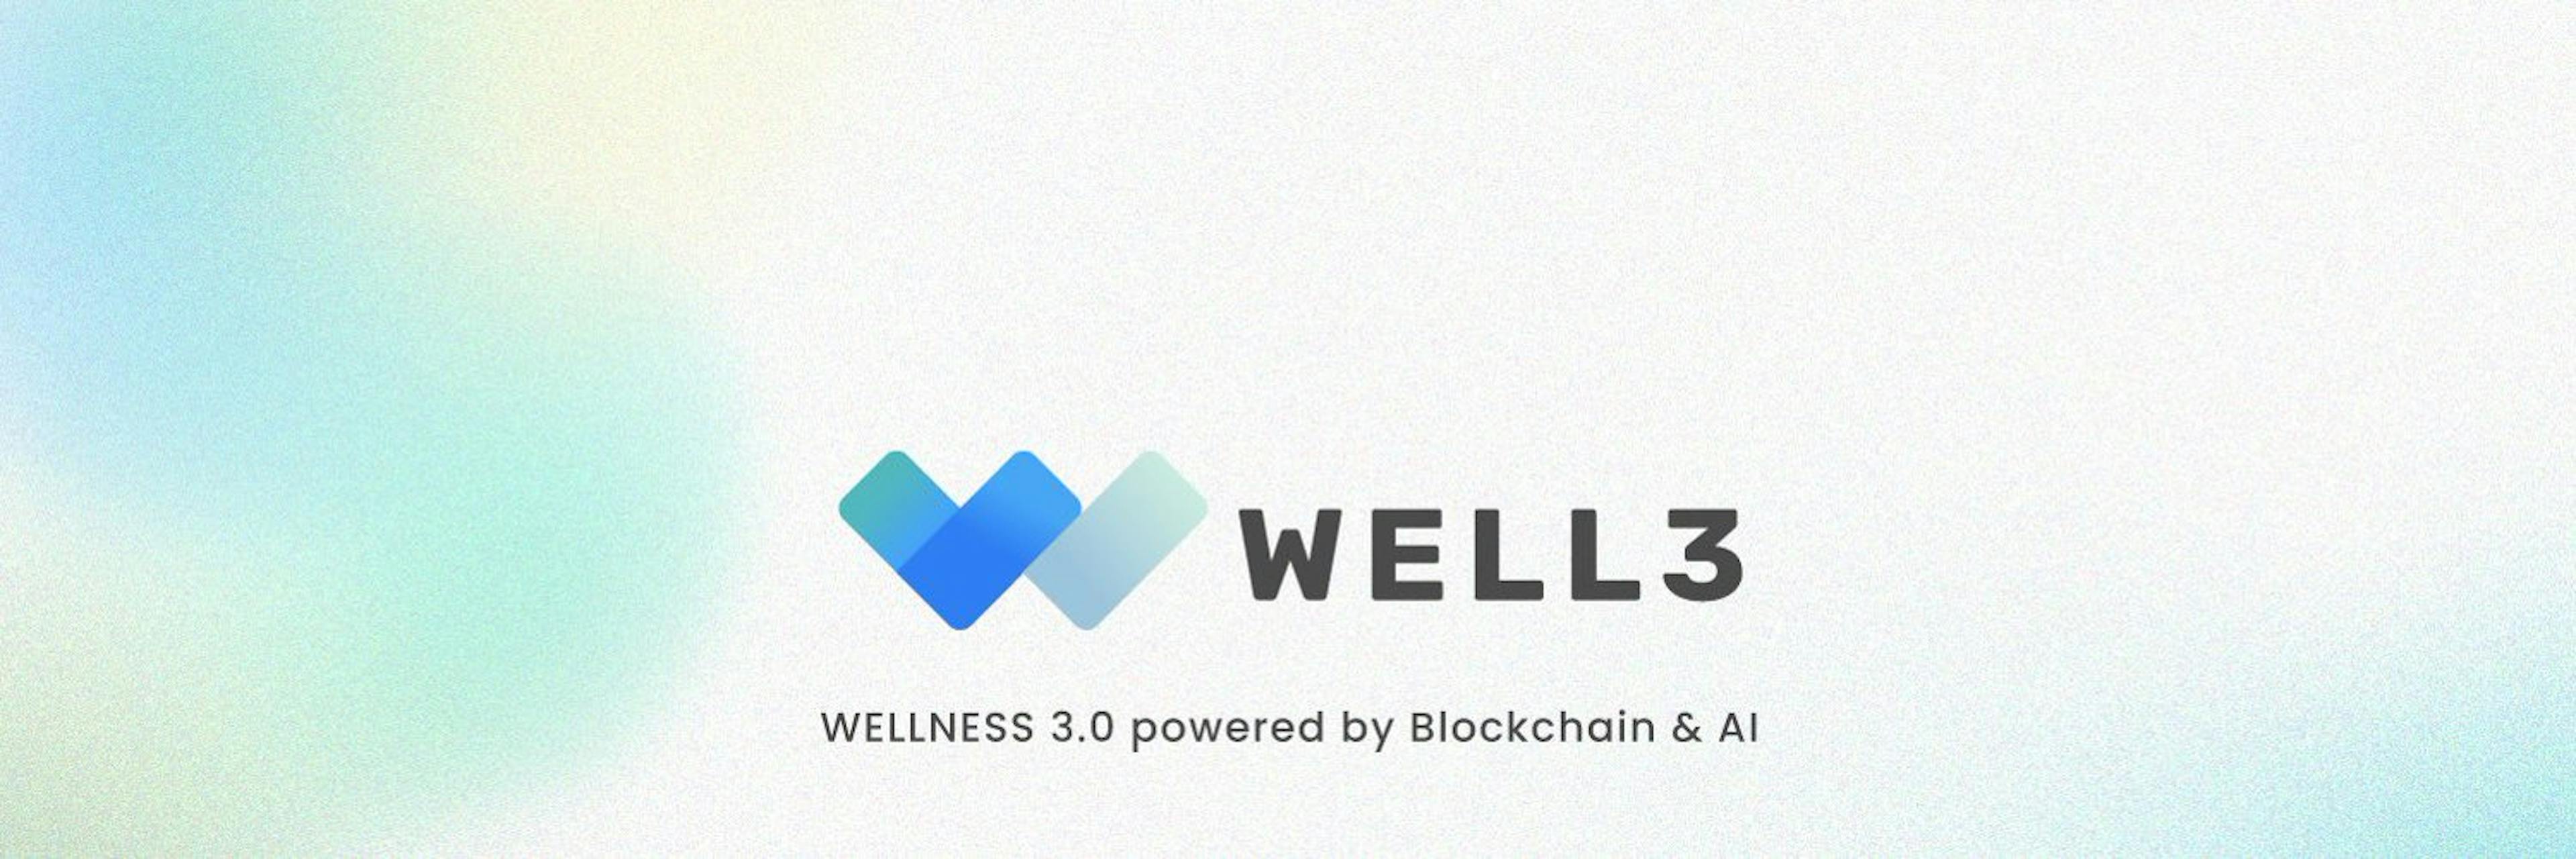 featured image - Lernen Sie Well3 kennen, das Multichain-Framework, das das Gesundheitsdatenmanagement revolutioniert